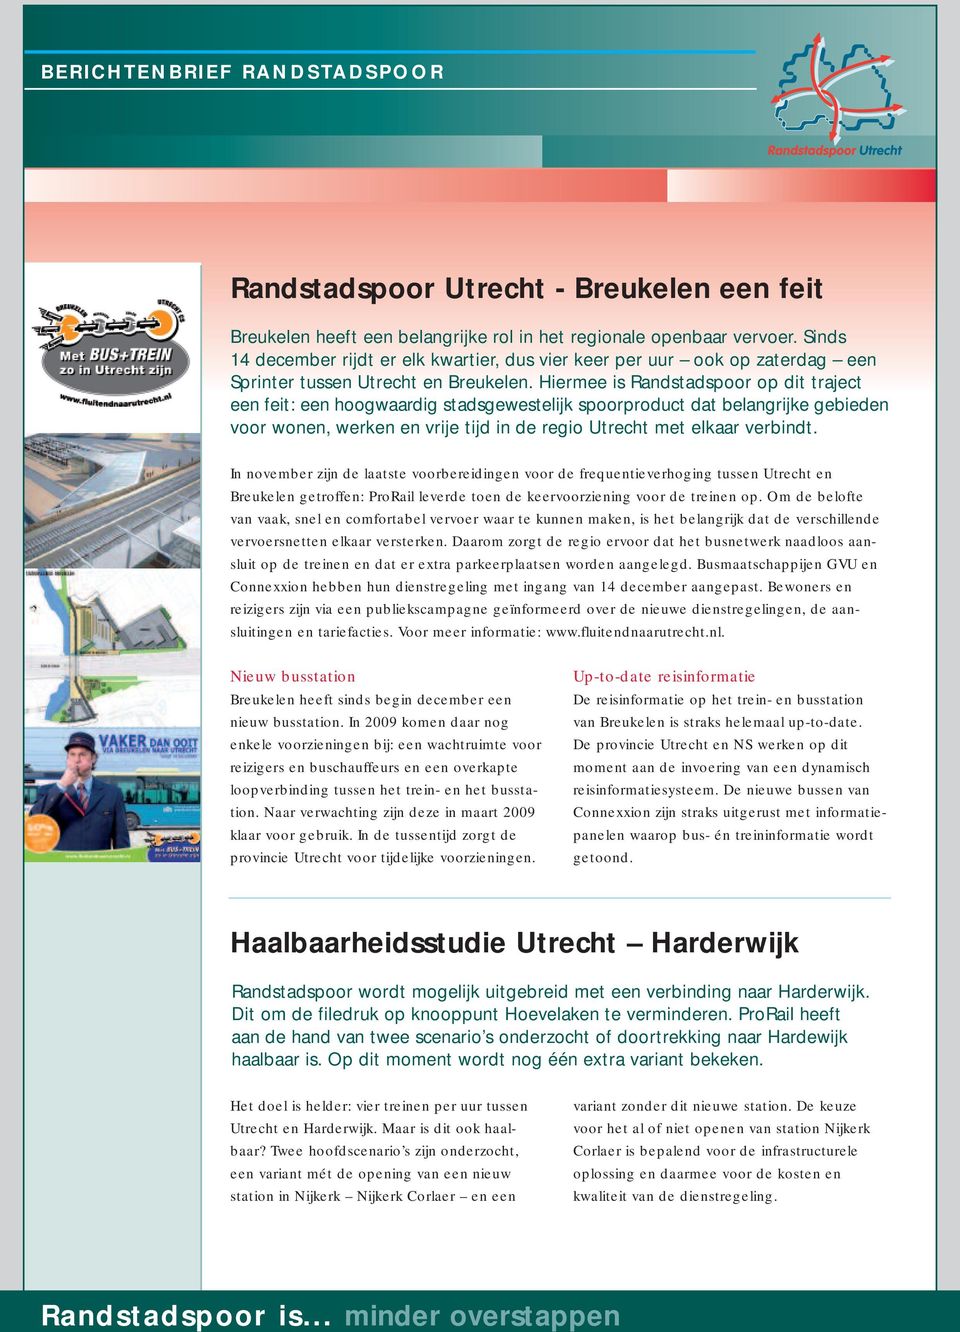 Hiermee is Randstadspoor op dit traject een feit: een hoogwaardig stadsgewestelijk spoorproduct dat belangrijke gebieden voor wonen, werken en vrije tijd in de regio Utrecht met elkaar verbindt.